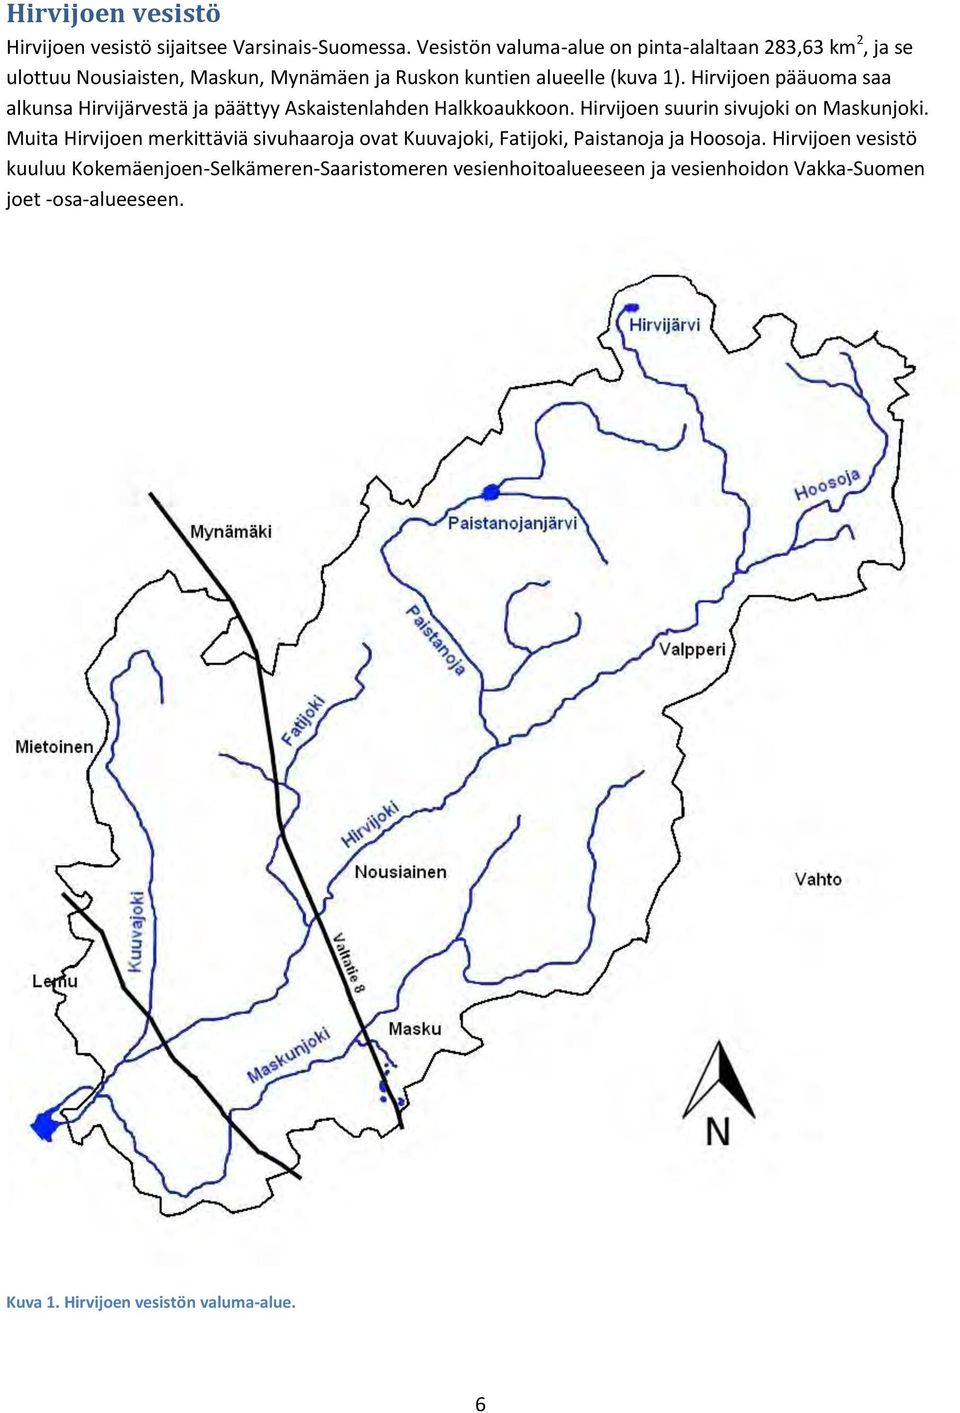 Hirvijoen pääuoma saa alkunsa Hirvijärvestä ja päättyy Askaistenlahden Halkkoaukkoon. Hirvijoen suurin sivujoki on Maskunjoki.